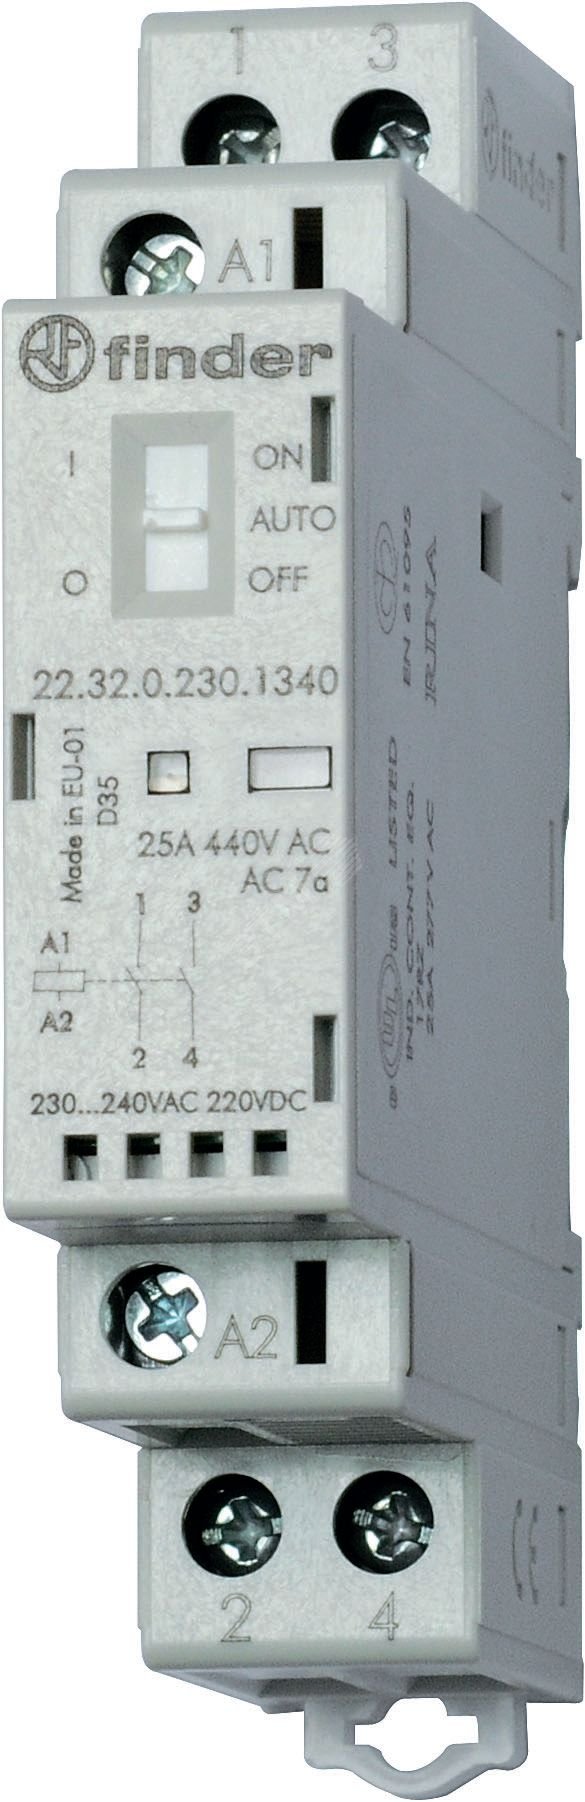 Контактор модульный 2NO 25А контакты AgSnO2 катушка 120В АС/DC 17.5мм IP20 переключатель Авто-Вкл-Выкл+механический индикатор/LED (1шт) 22.32.0.120.4340PAS FINDER - превью 2